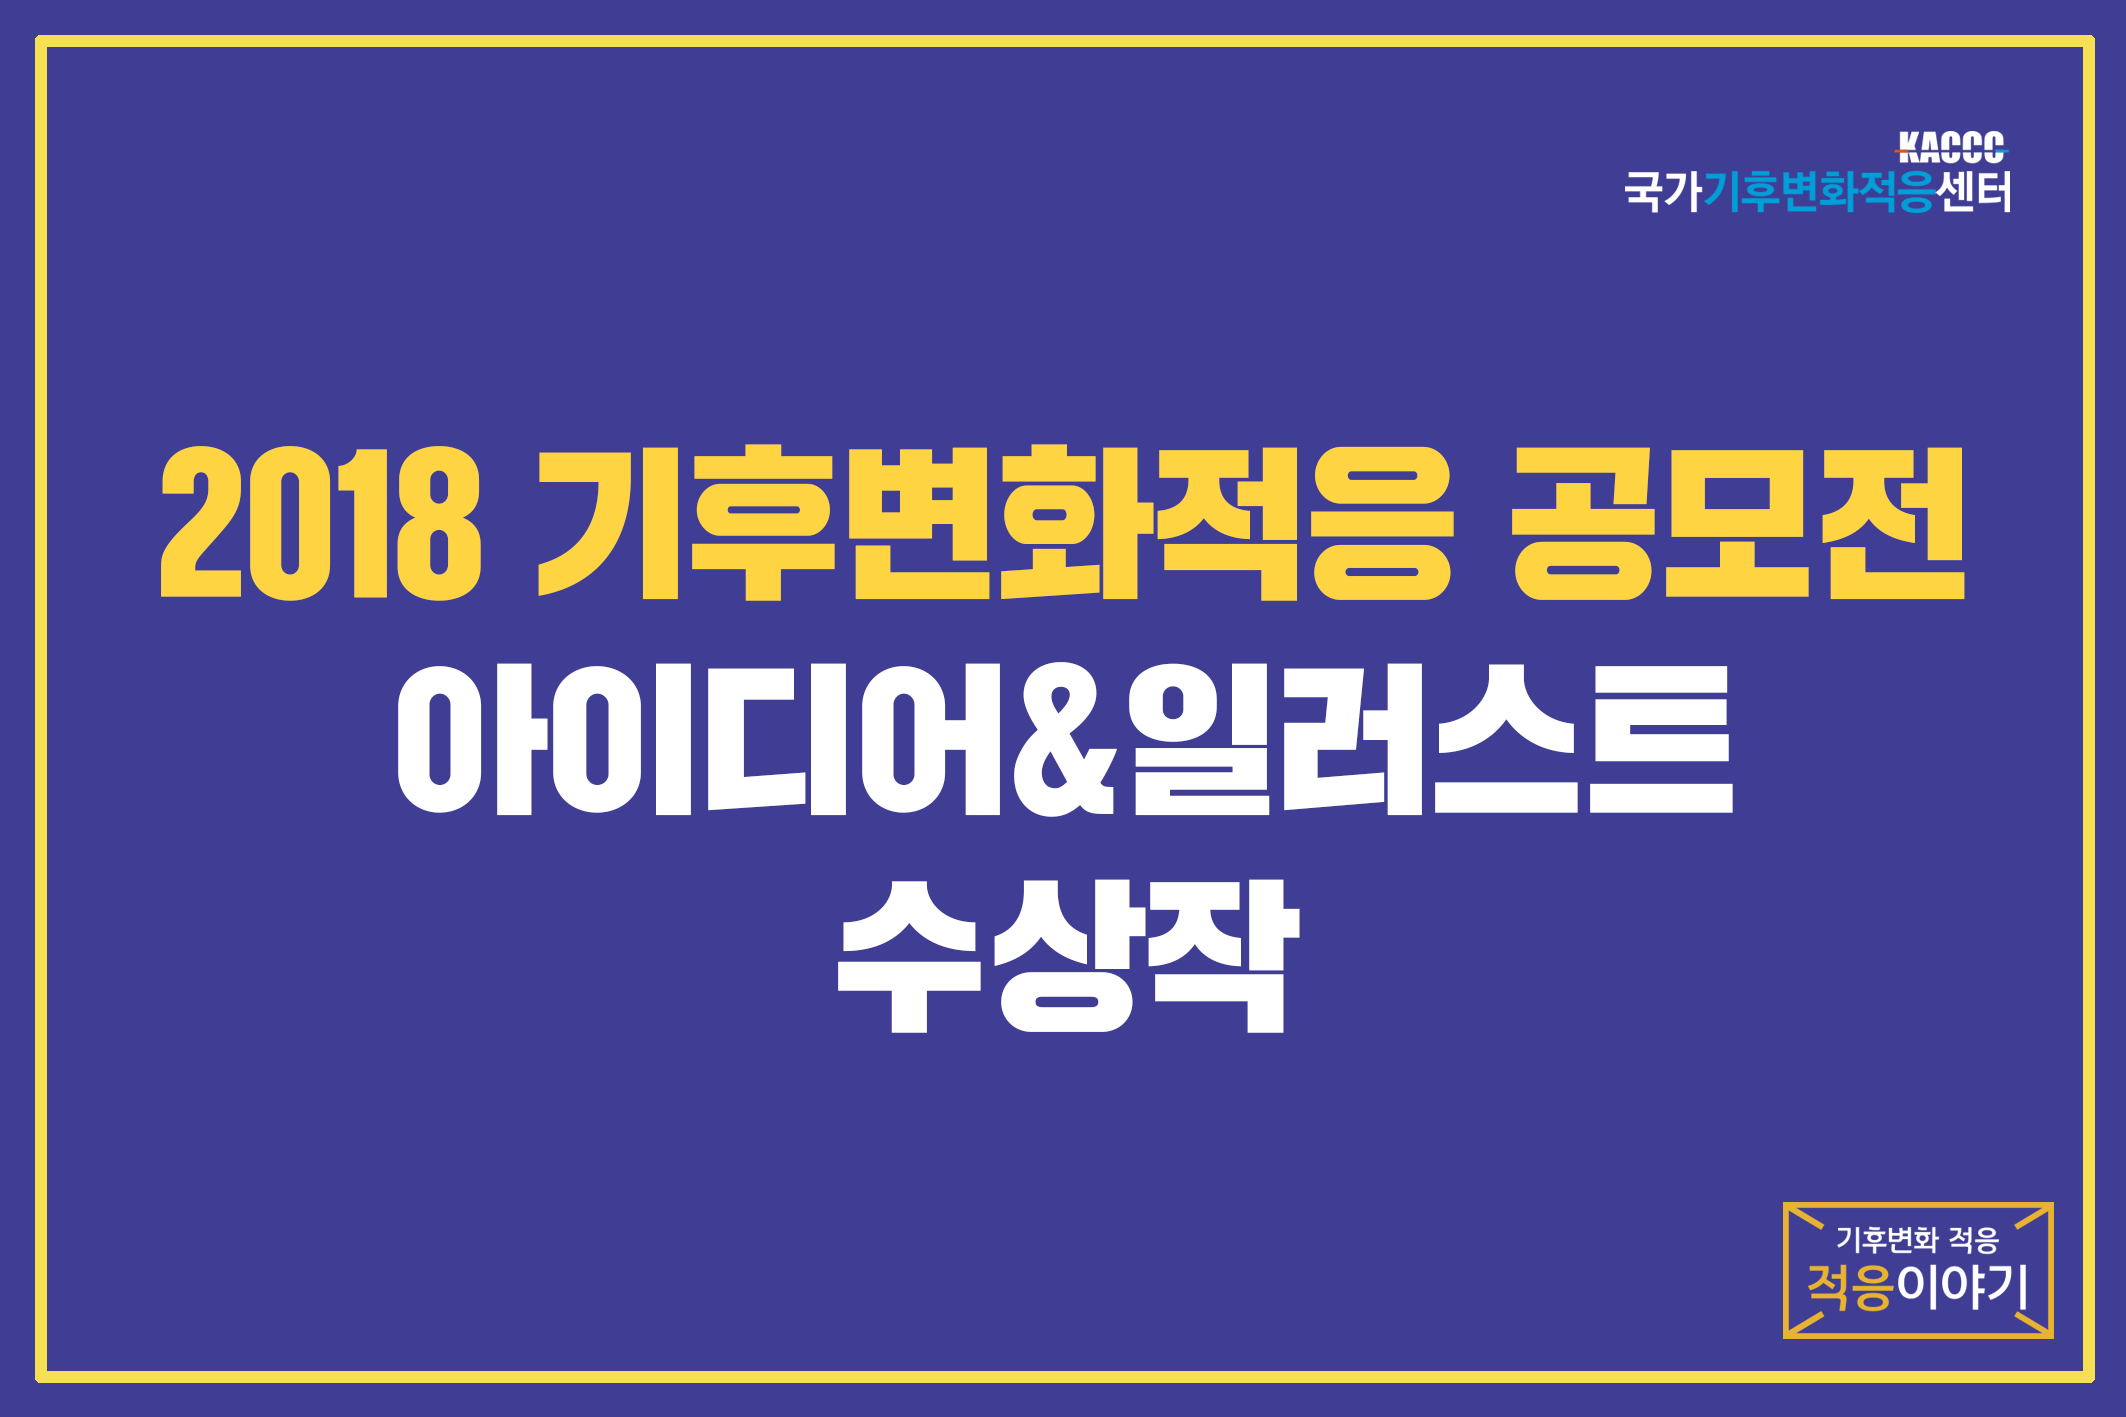 2018 기후변화적응 공모전 - 아이디어 & 일러스트 수상작